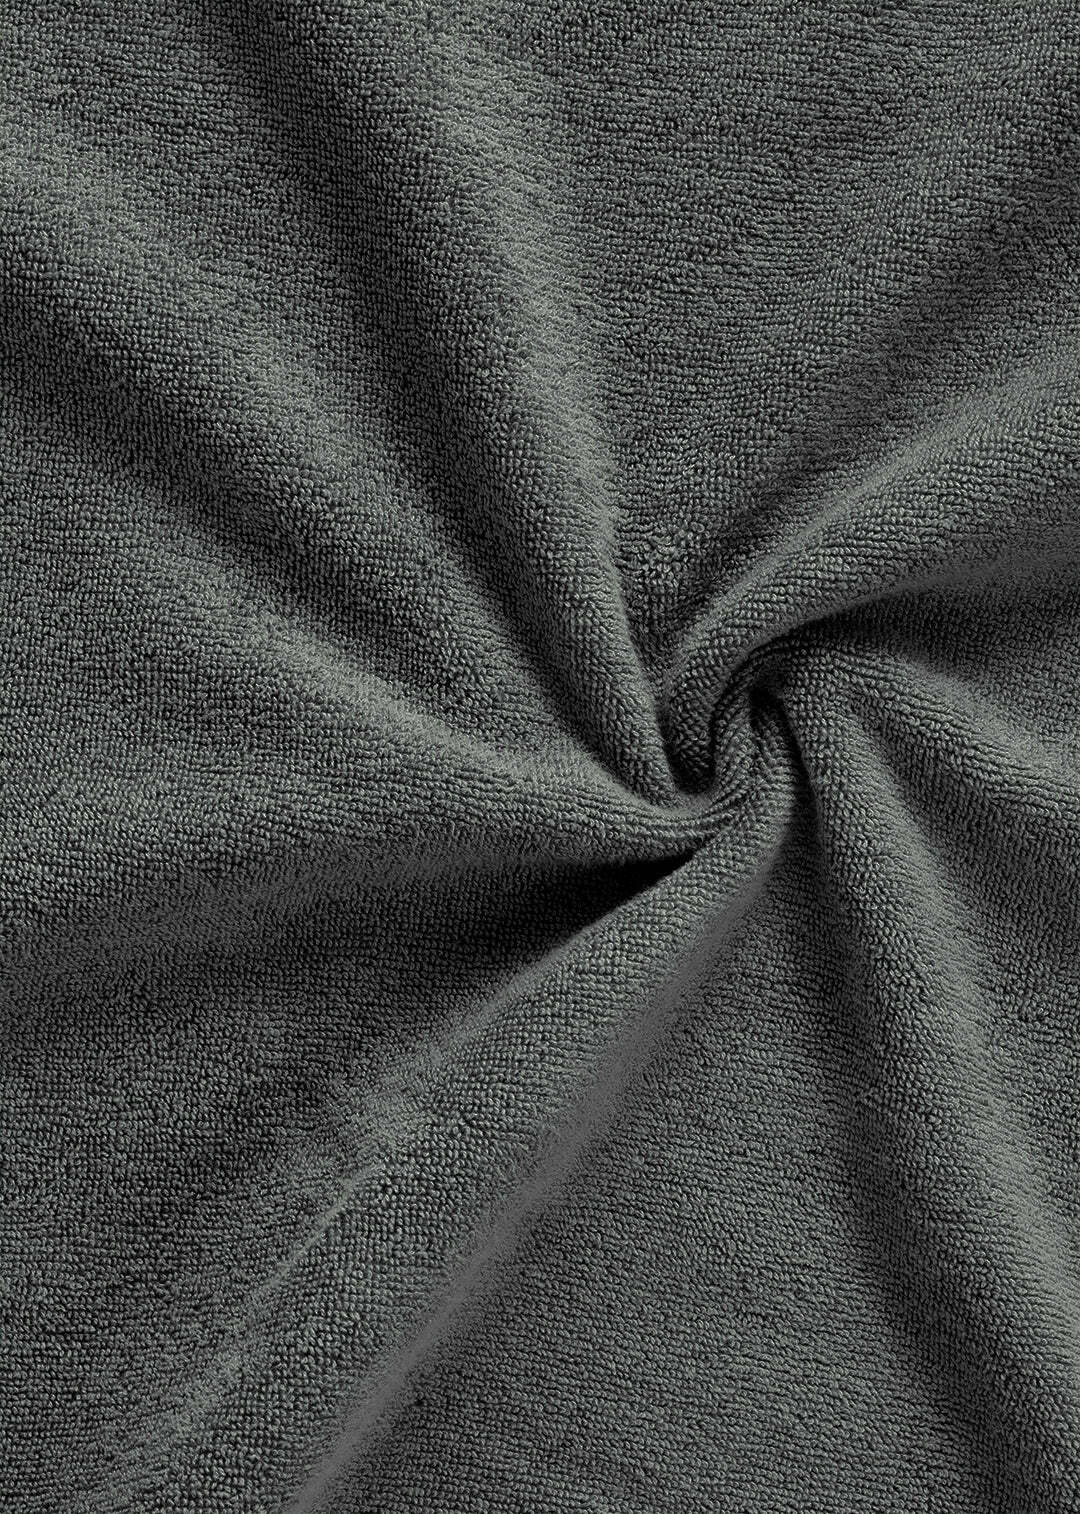 Handtuch Baumwolle Anthrazit 70 x 130 cm 1